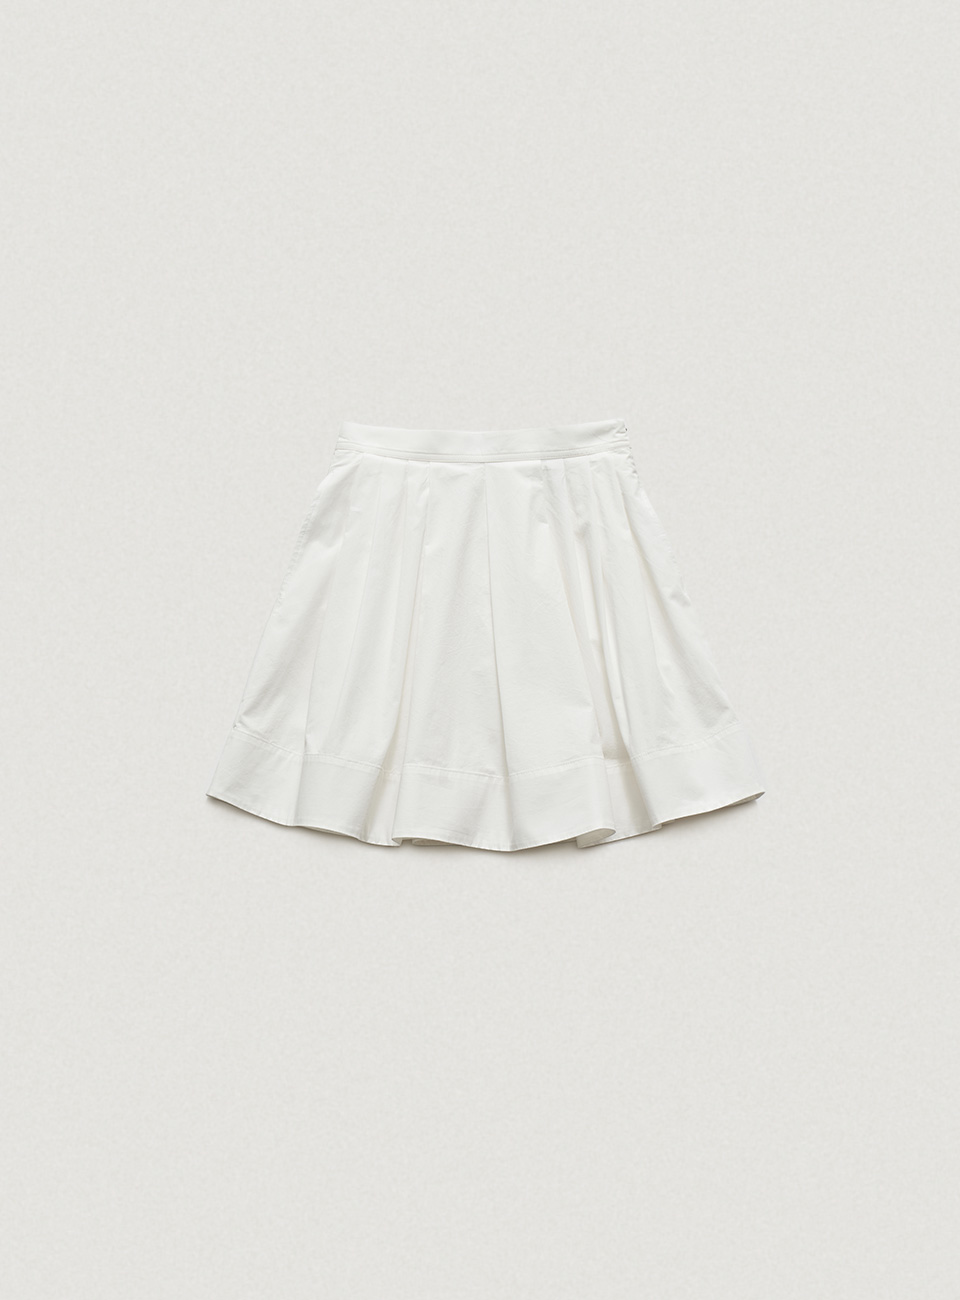 Magnolia Pleated Skirt [6월 중순 순차 배송]